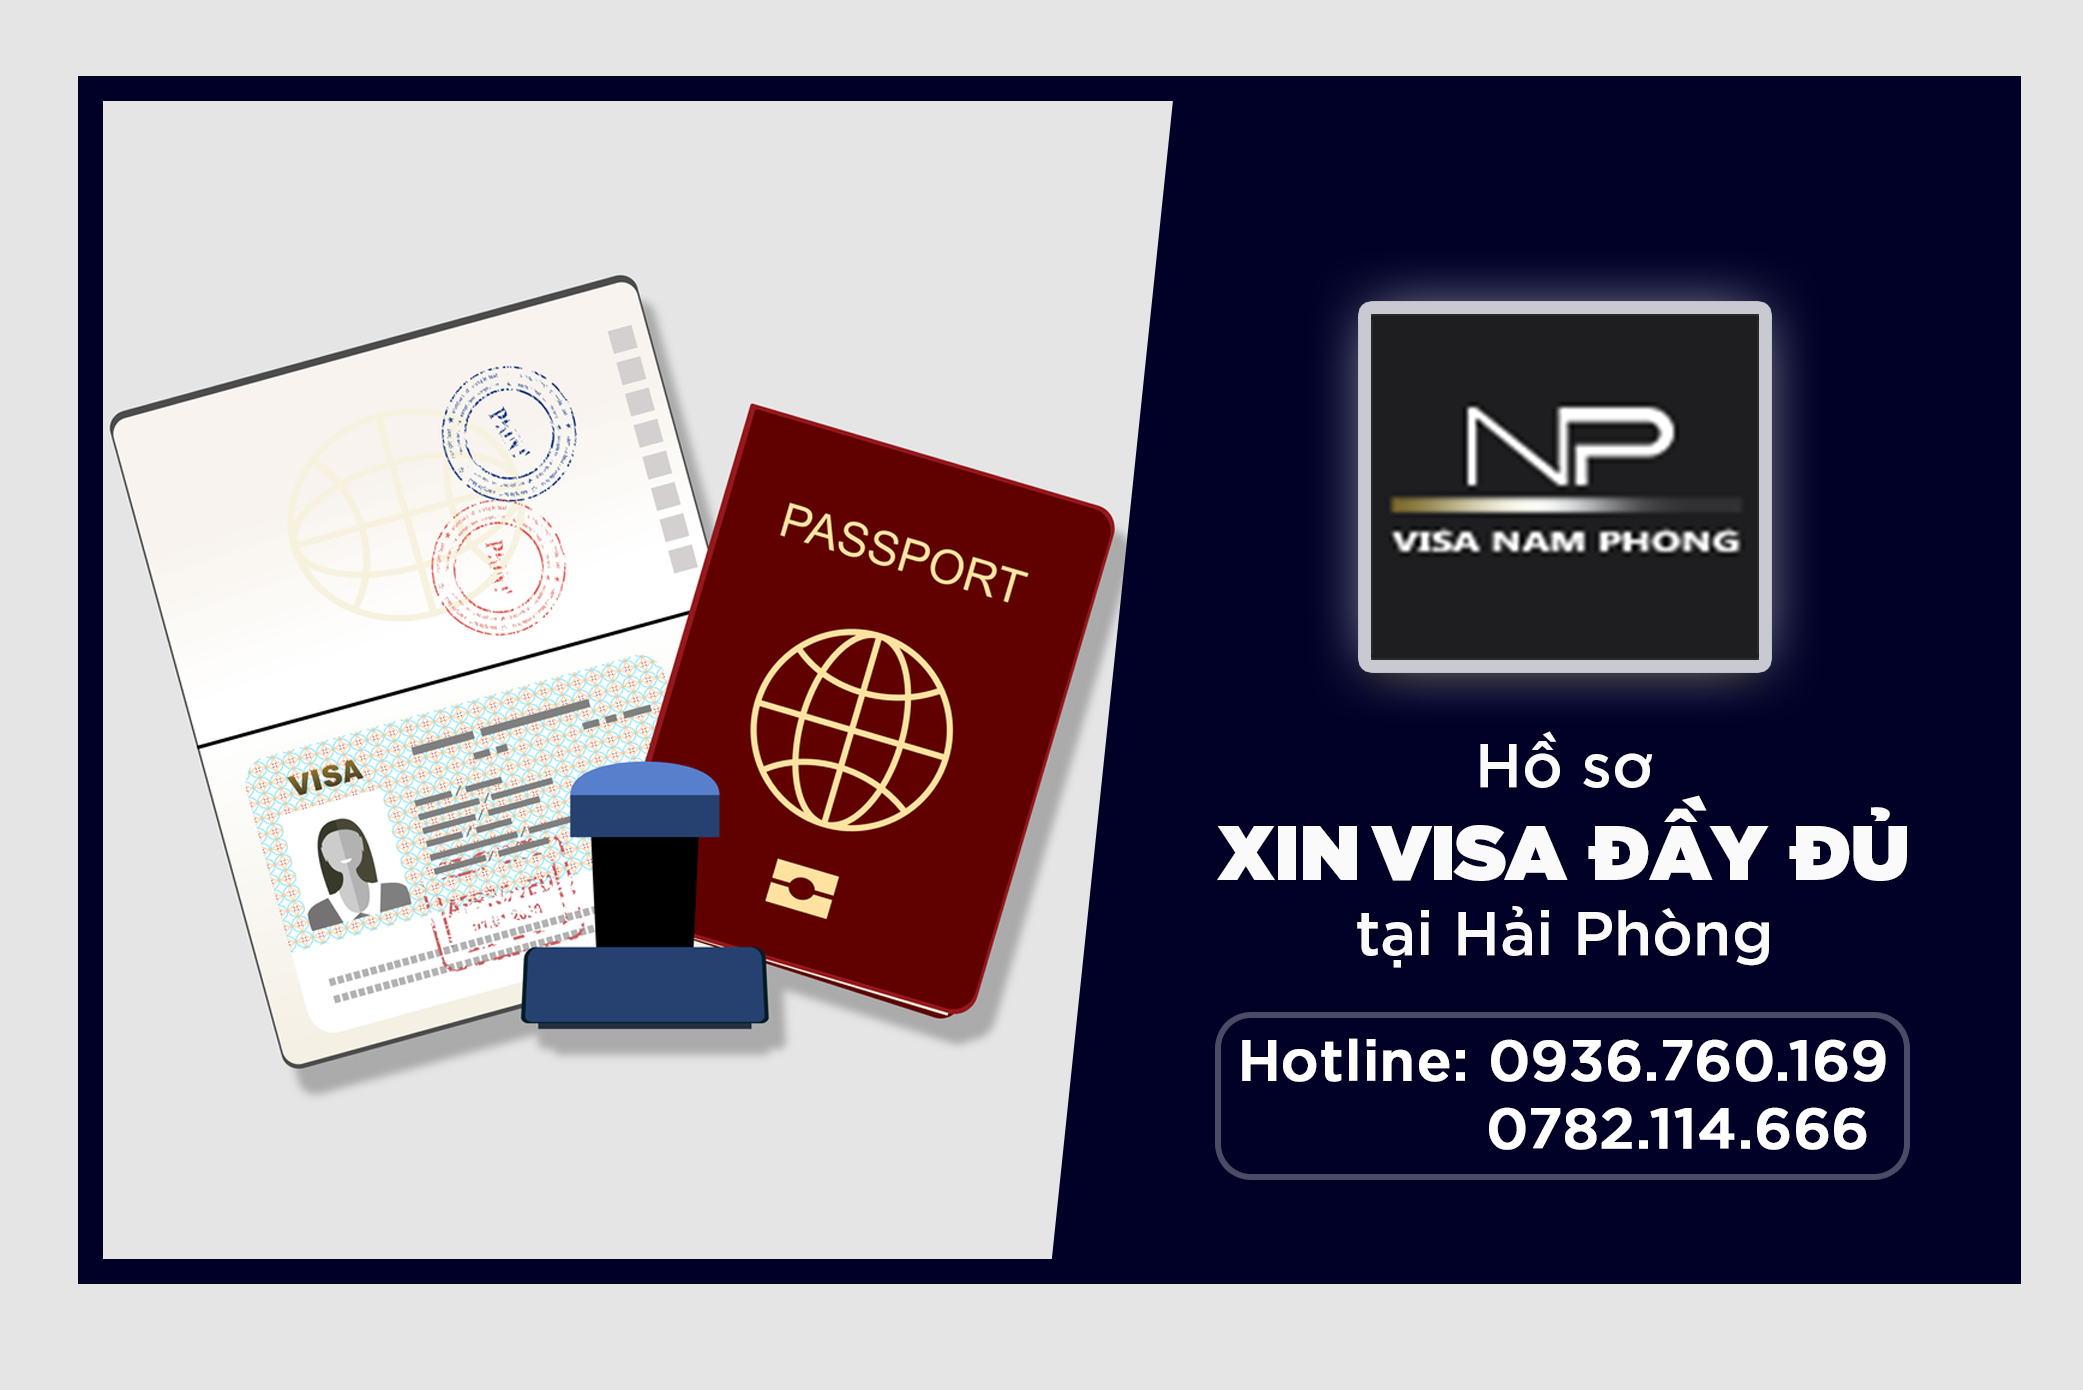 Hồ sơ xin visa đầy đủ tại Hải Phòng